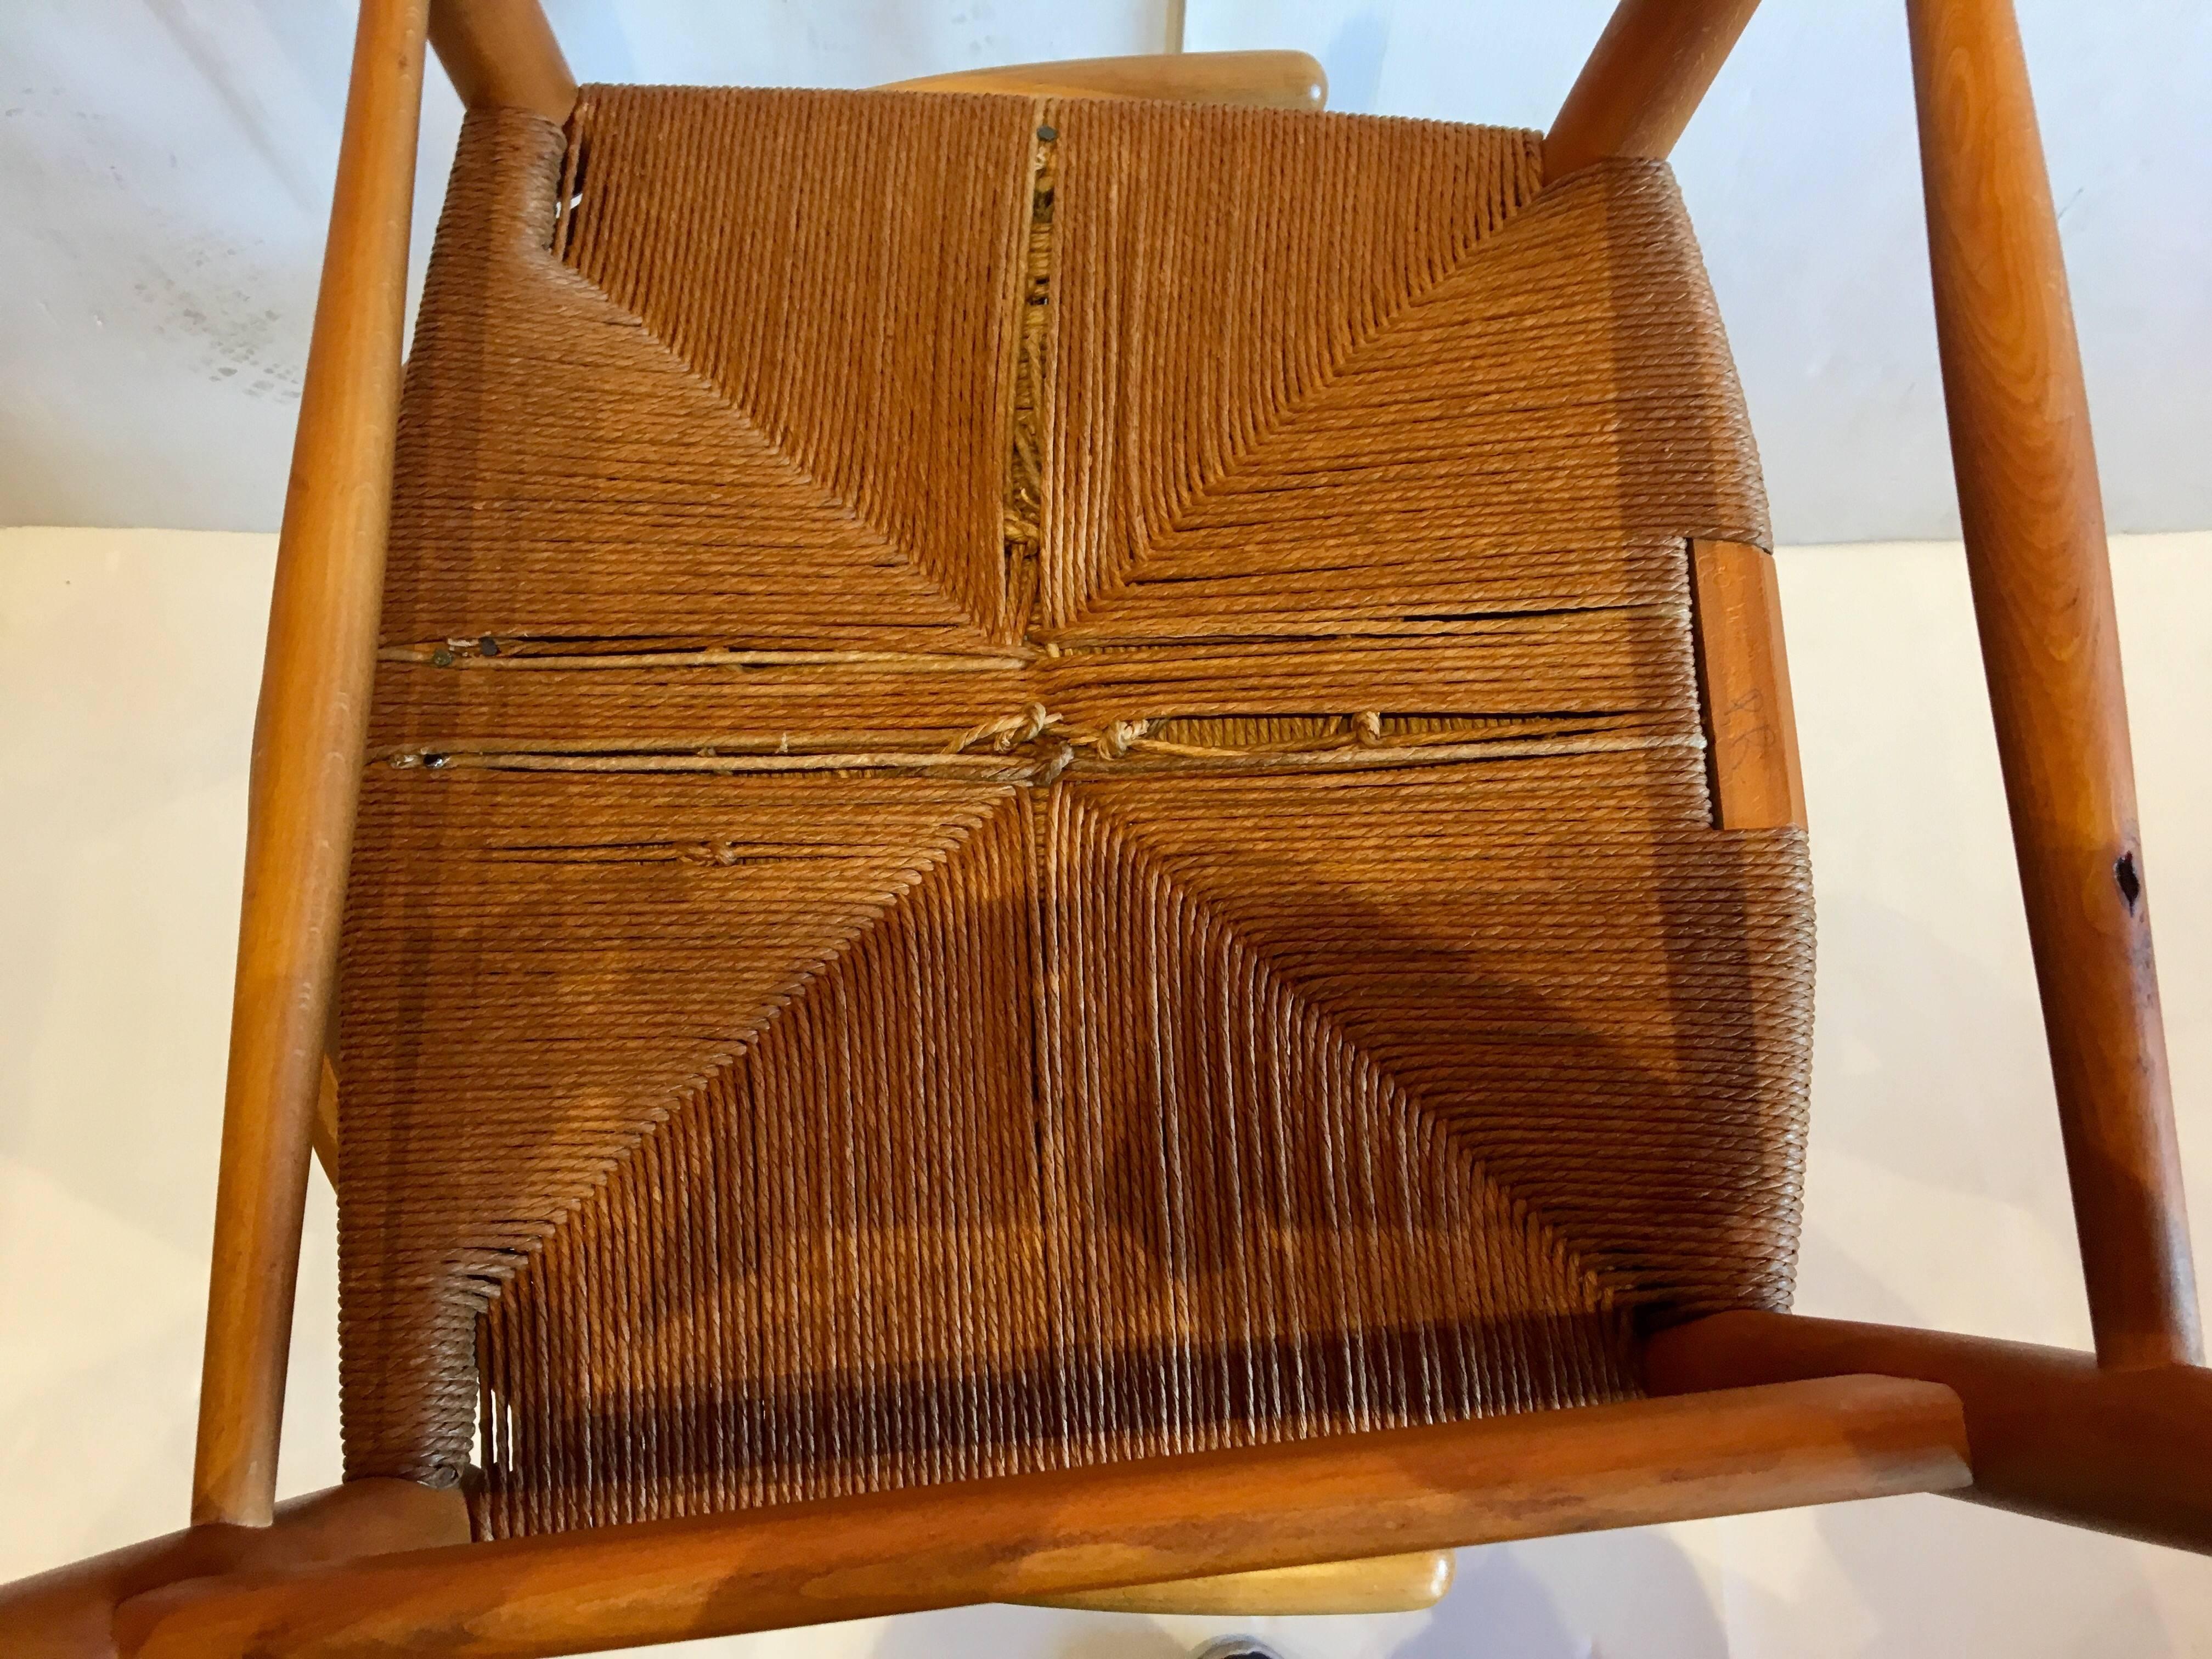 20th Century Pair of Danish Modern Hans Wegner Wishbone Chairs by Carl Hansen & Son